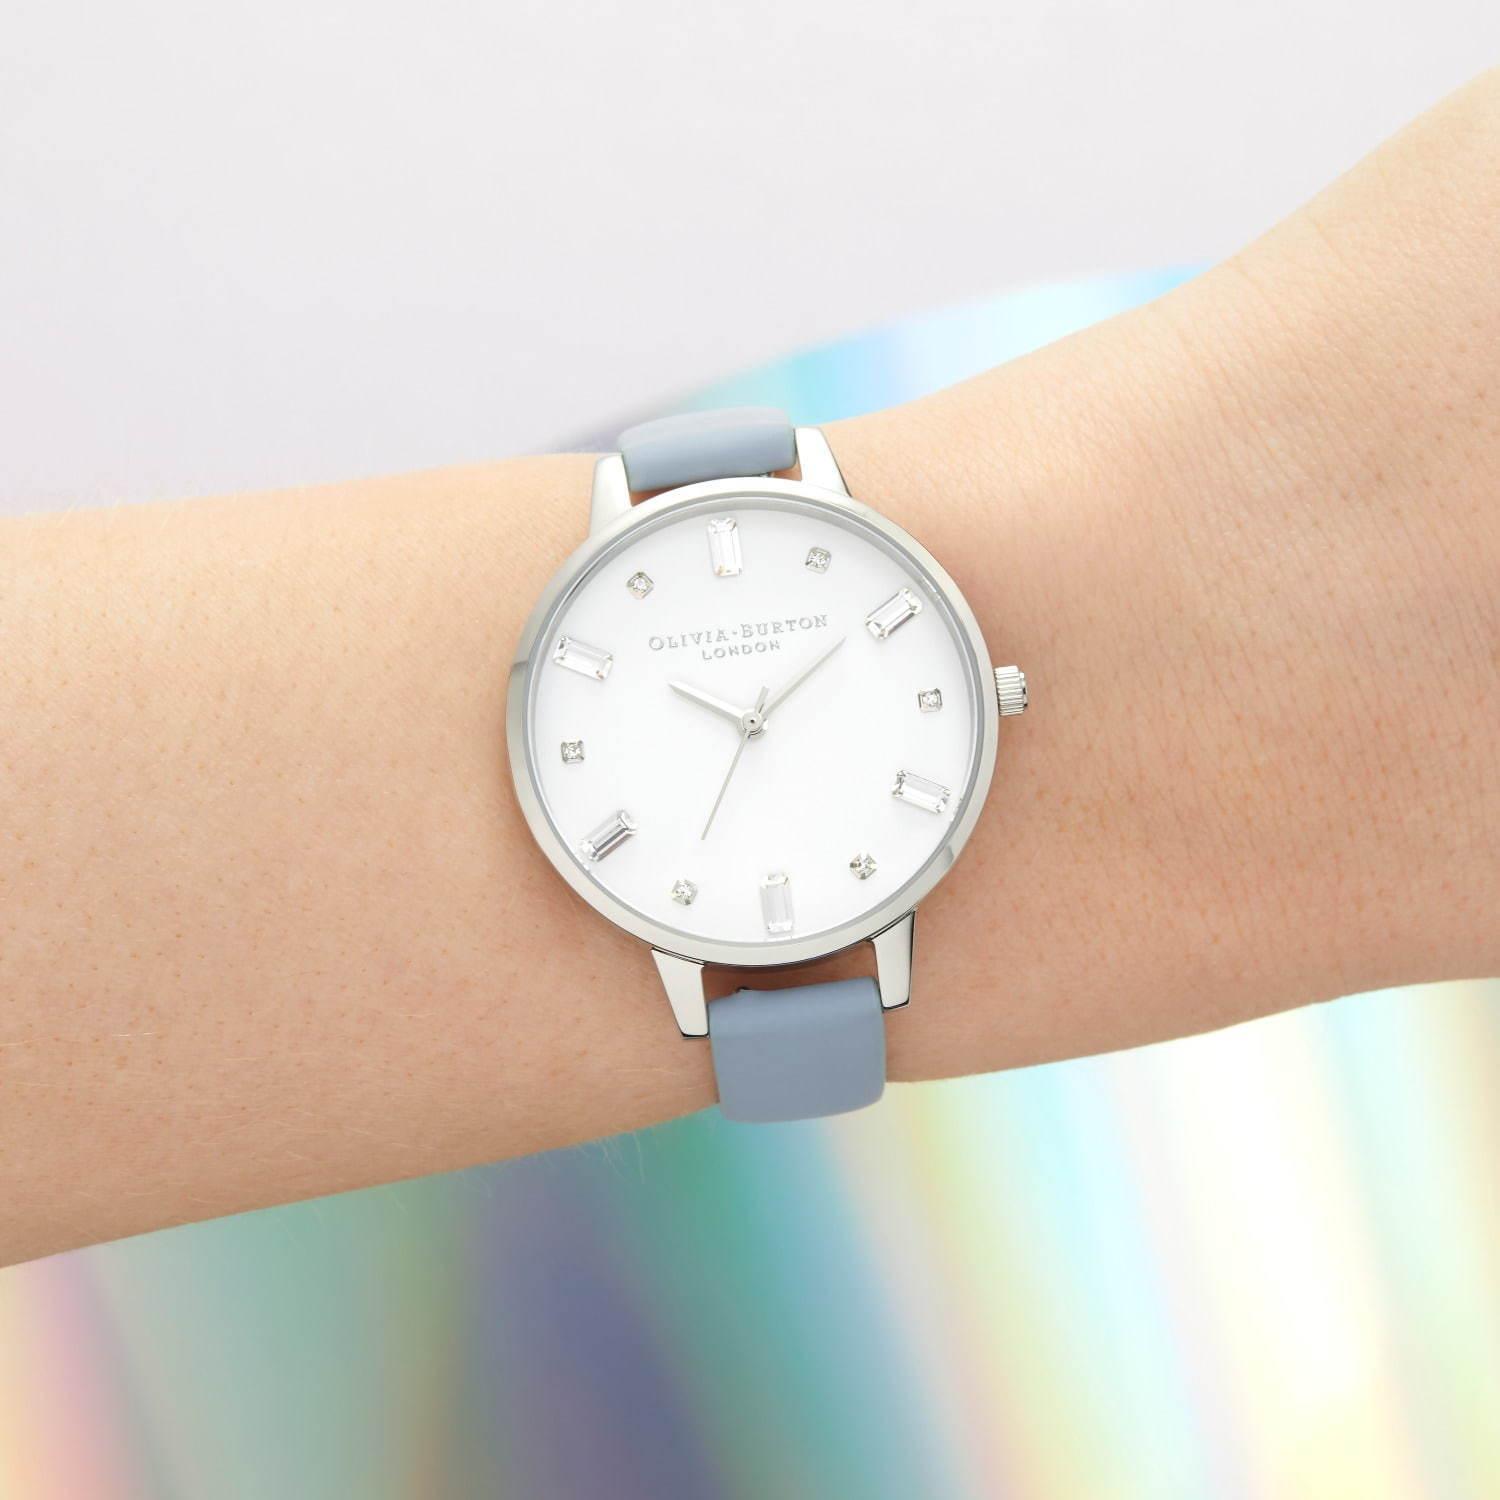 オリビア・バートン“スノードーム”型アニマル腕時計、スワロフスキークリスタルがシャラシャラ踊る コピー